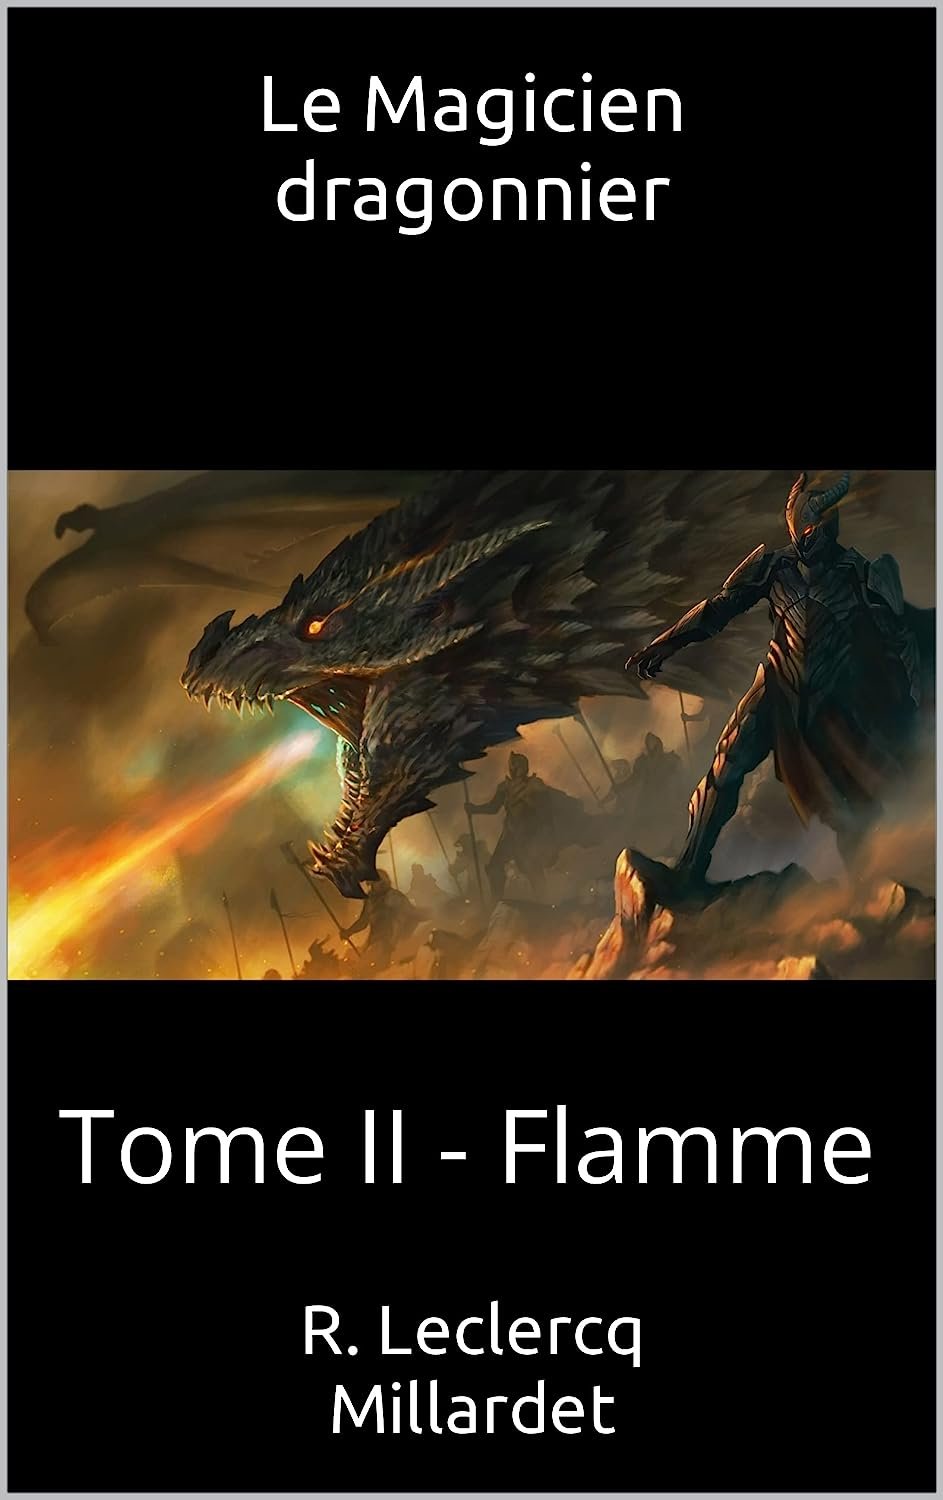 R. Leclercq Millardet - Le Magicien dragonnier Tome 2 : Flamme